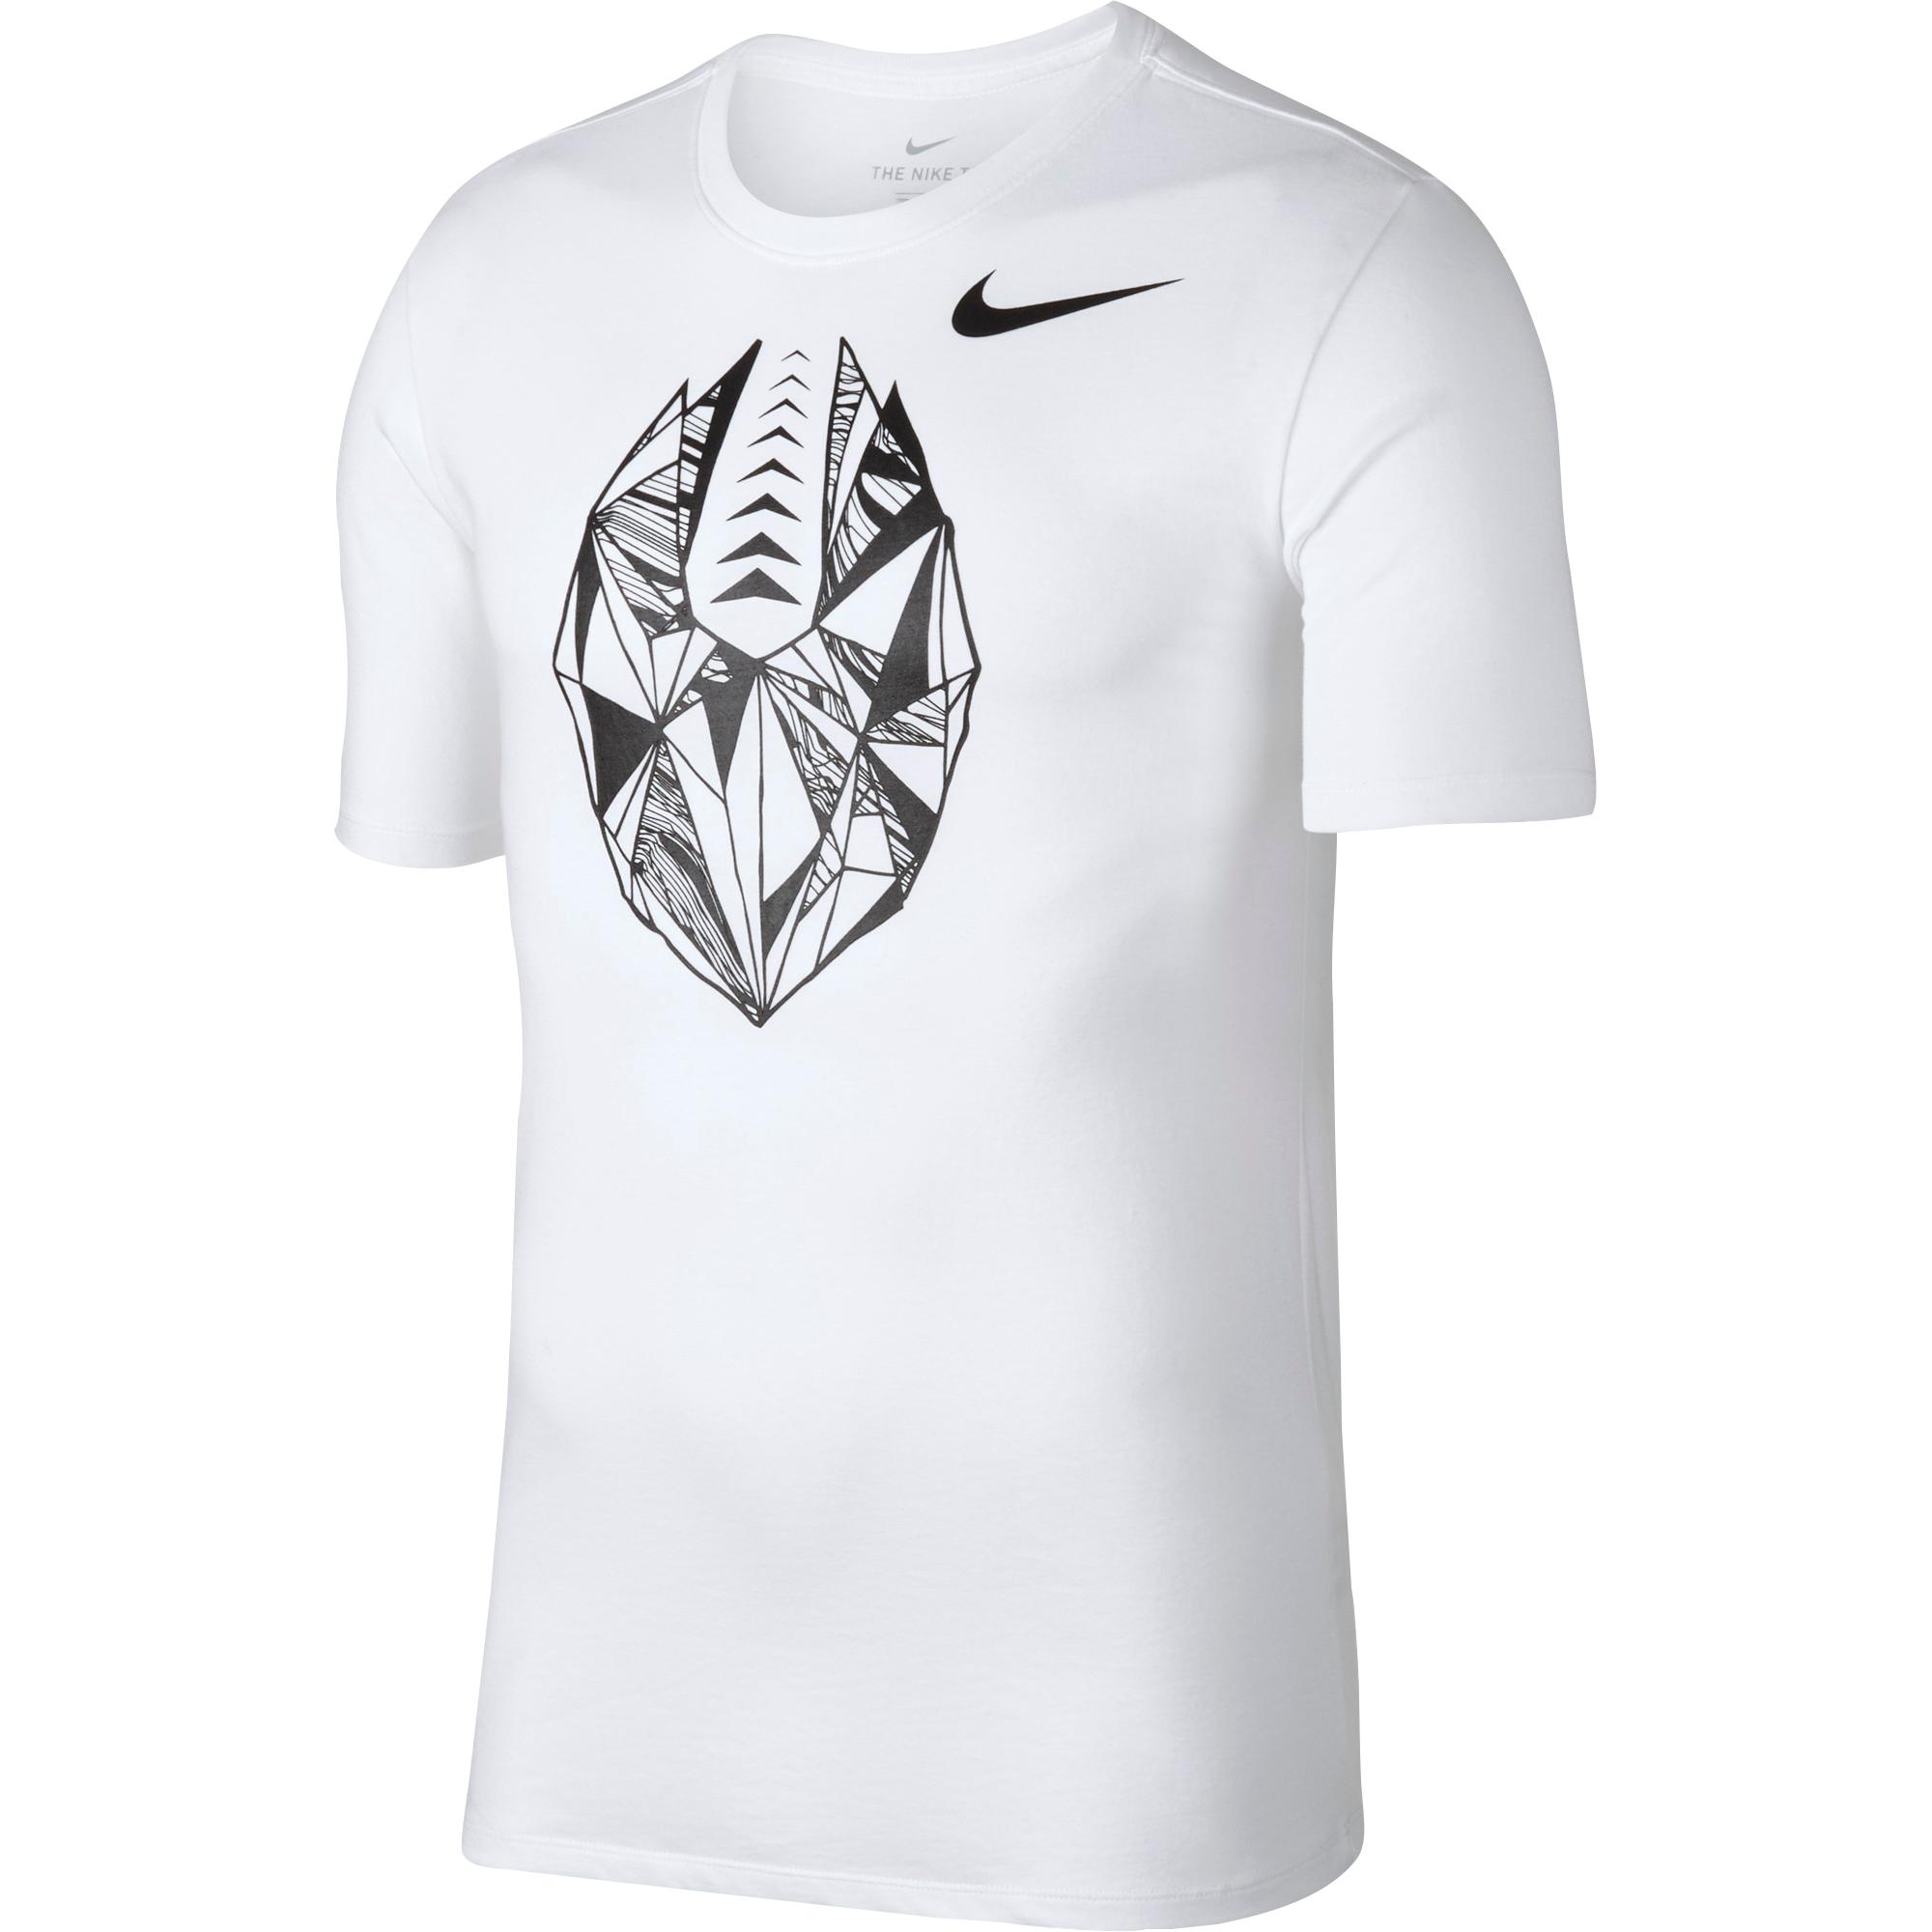 Nike Cotton Football Logo T-shirt in White for Men - Lyst